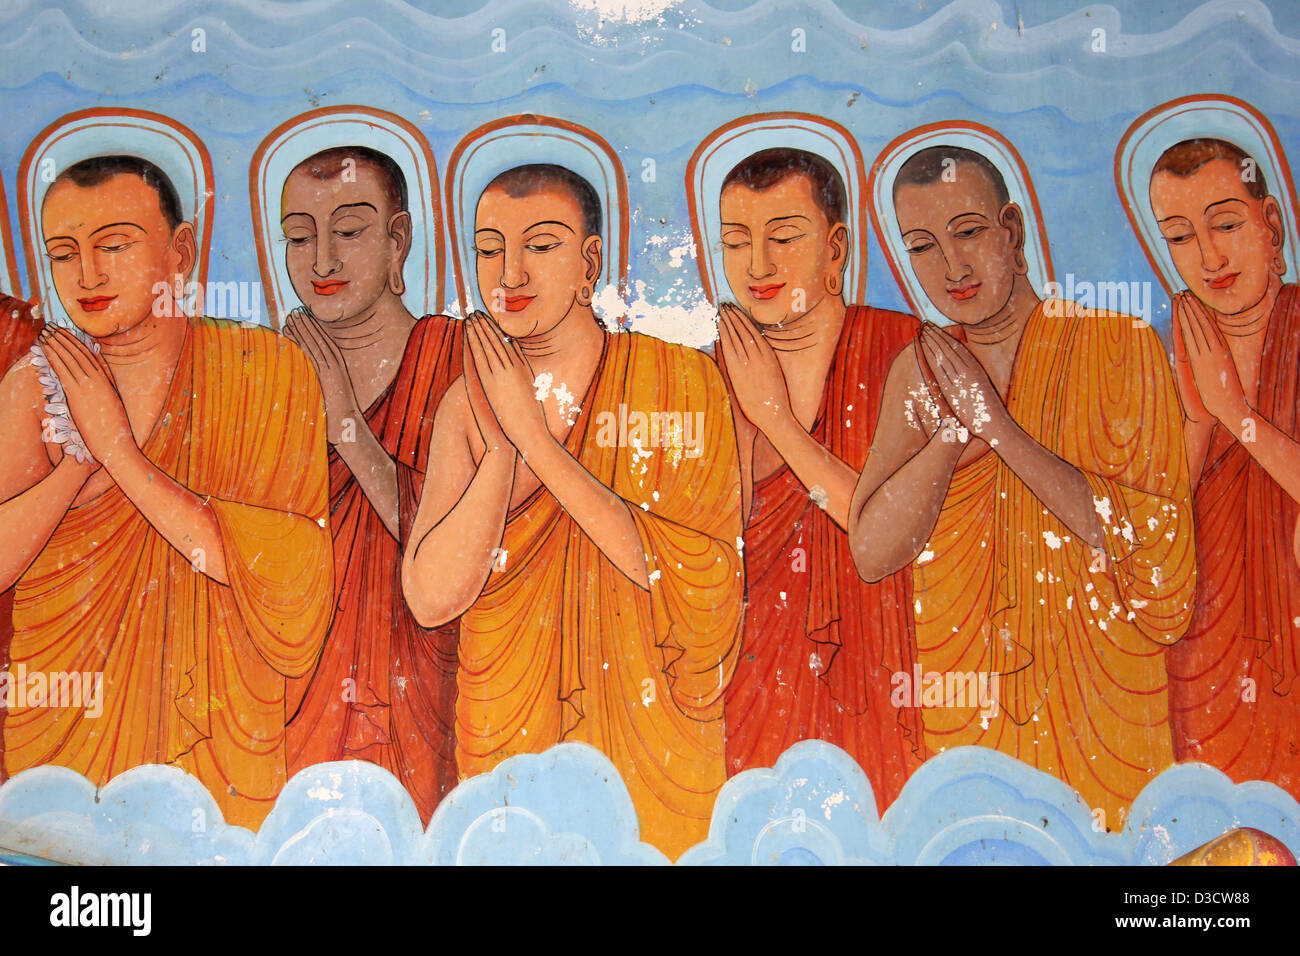 Ligne de moines bouddhistes peintes sur le mur de temple Isurumuniya, Sri Lanka Banque D'Images